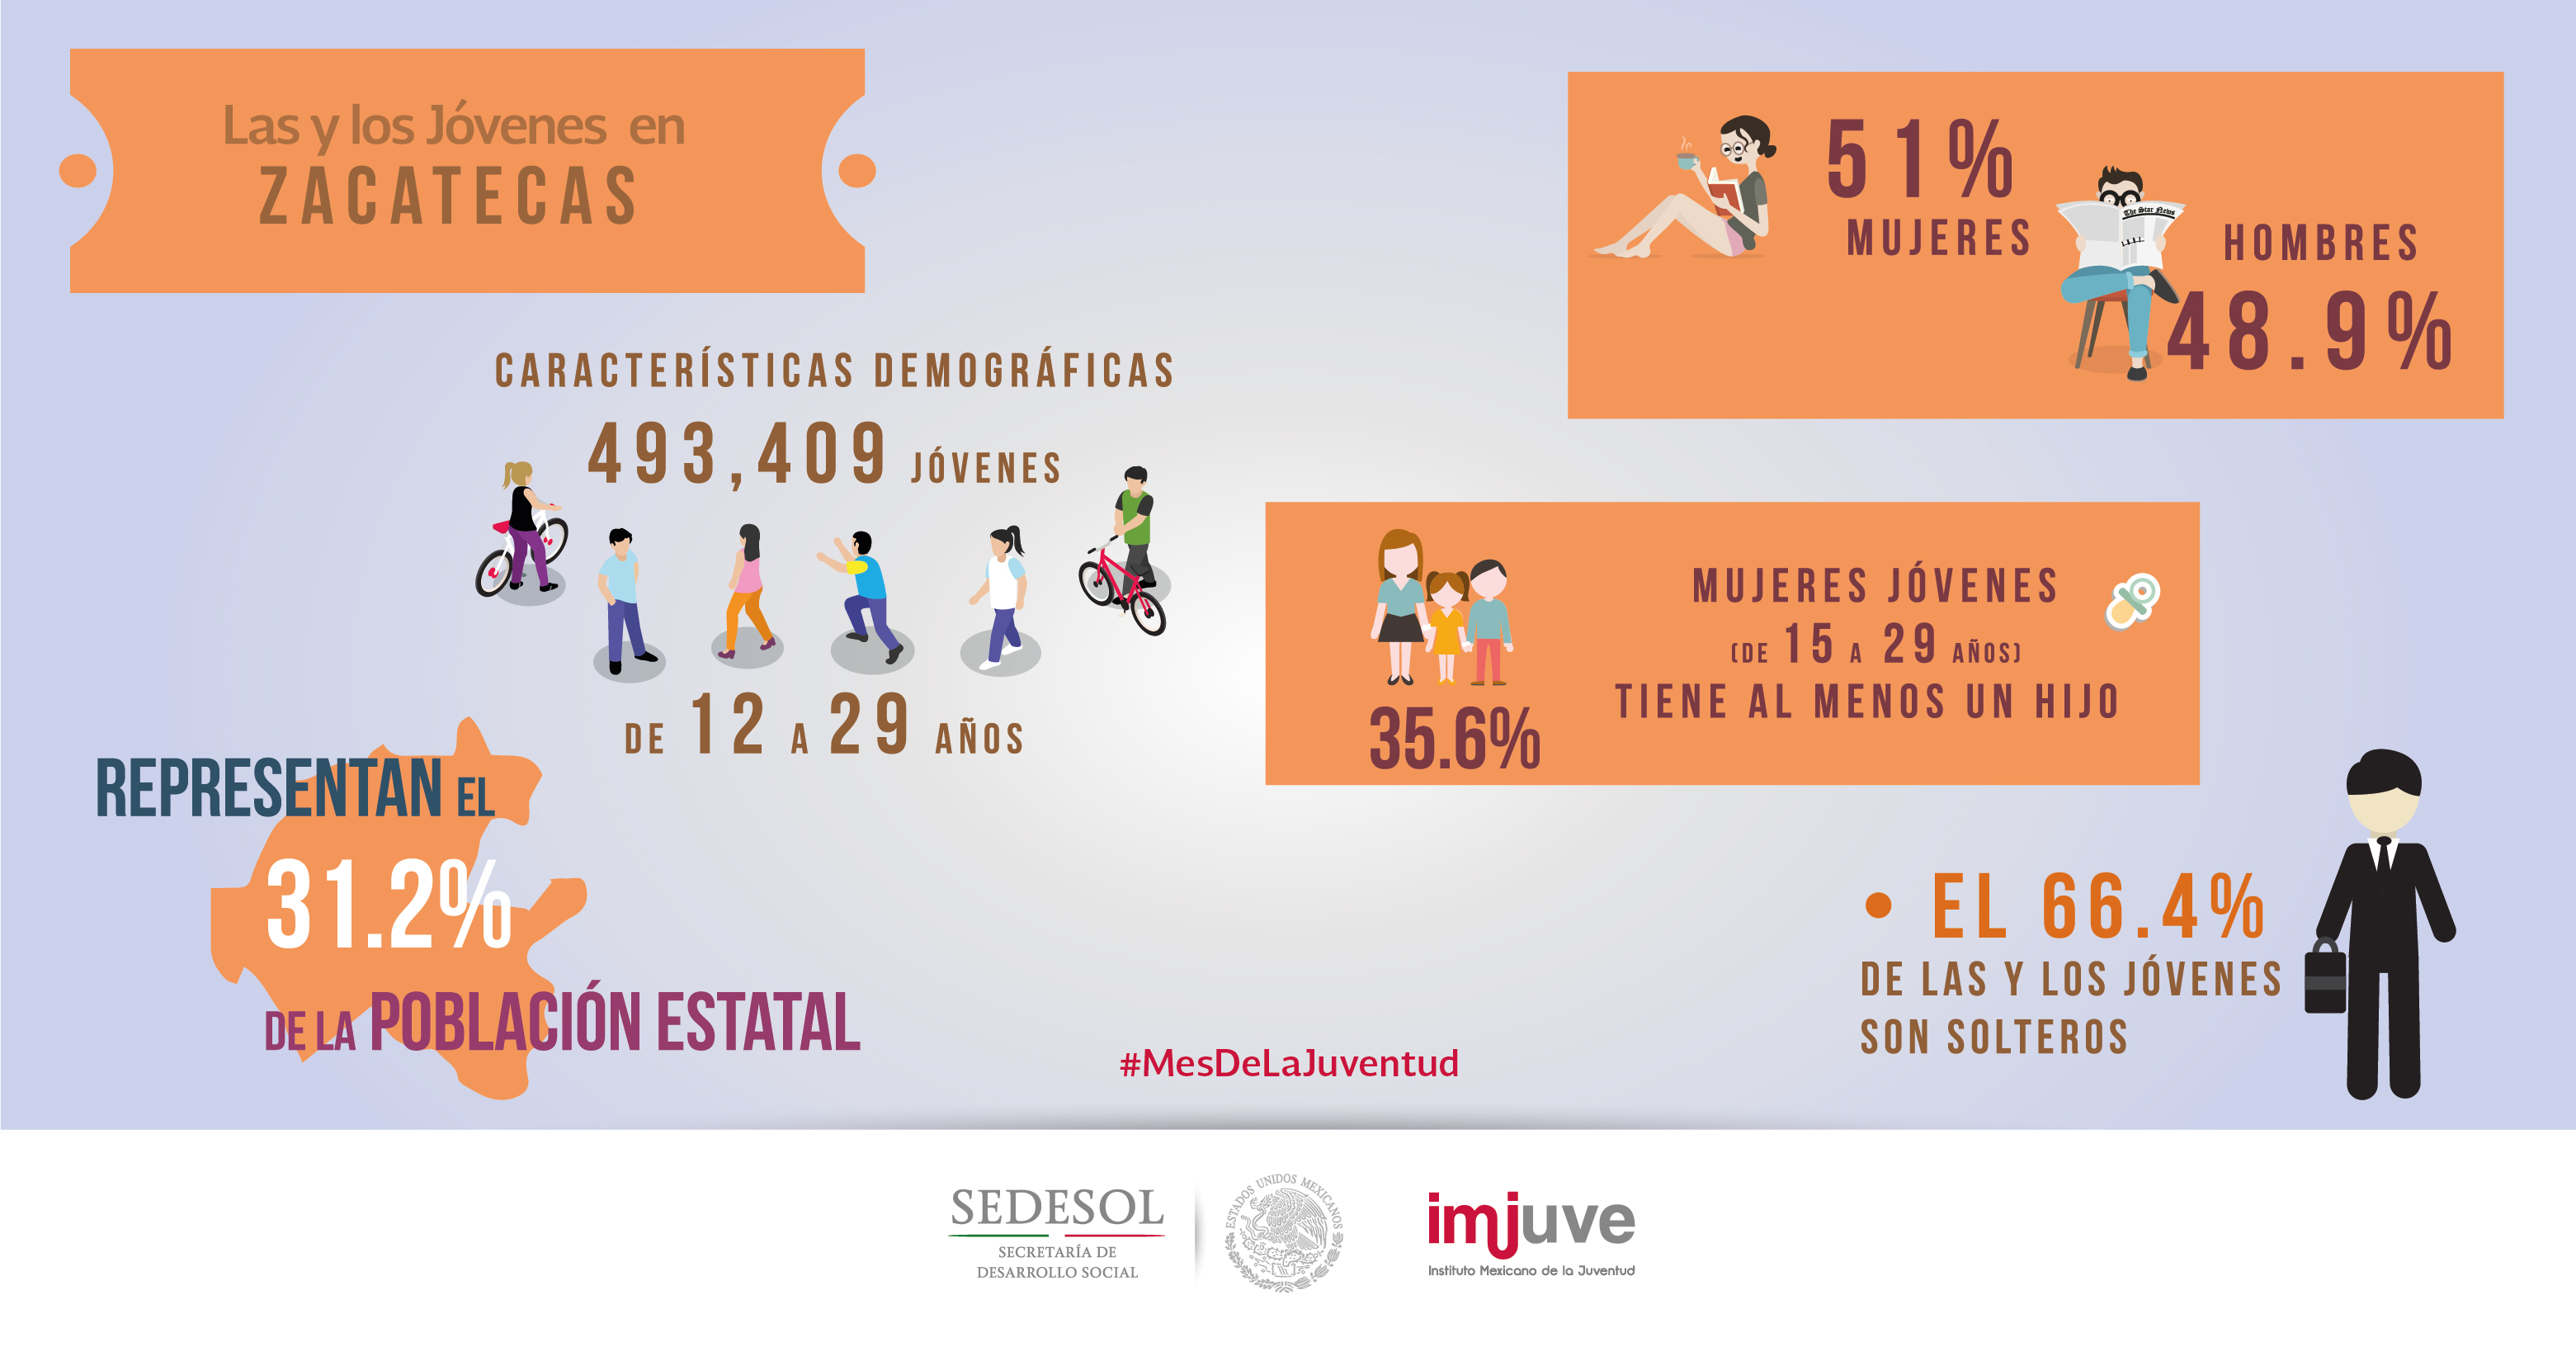 #DatoCurioso en Zacatecas hay 493,409 jóvenes de 12 a 29 años, que representan el 31.2% de la población total.